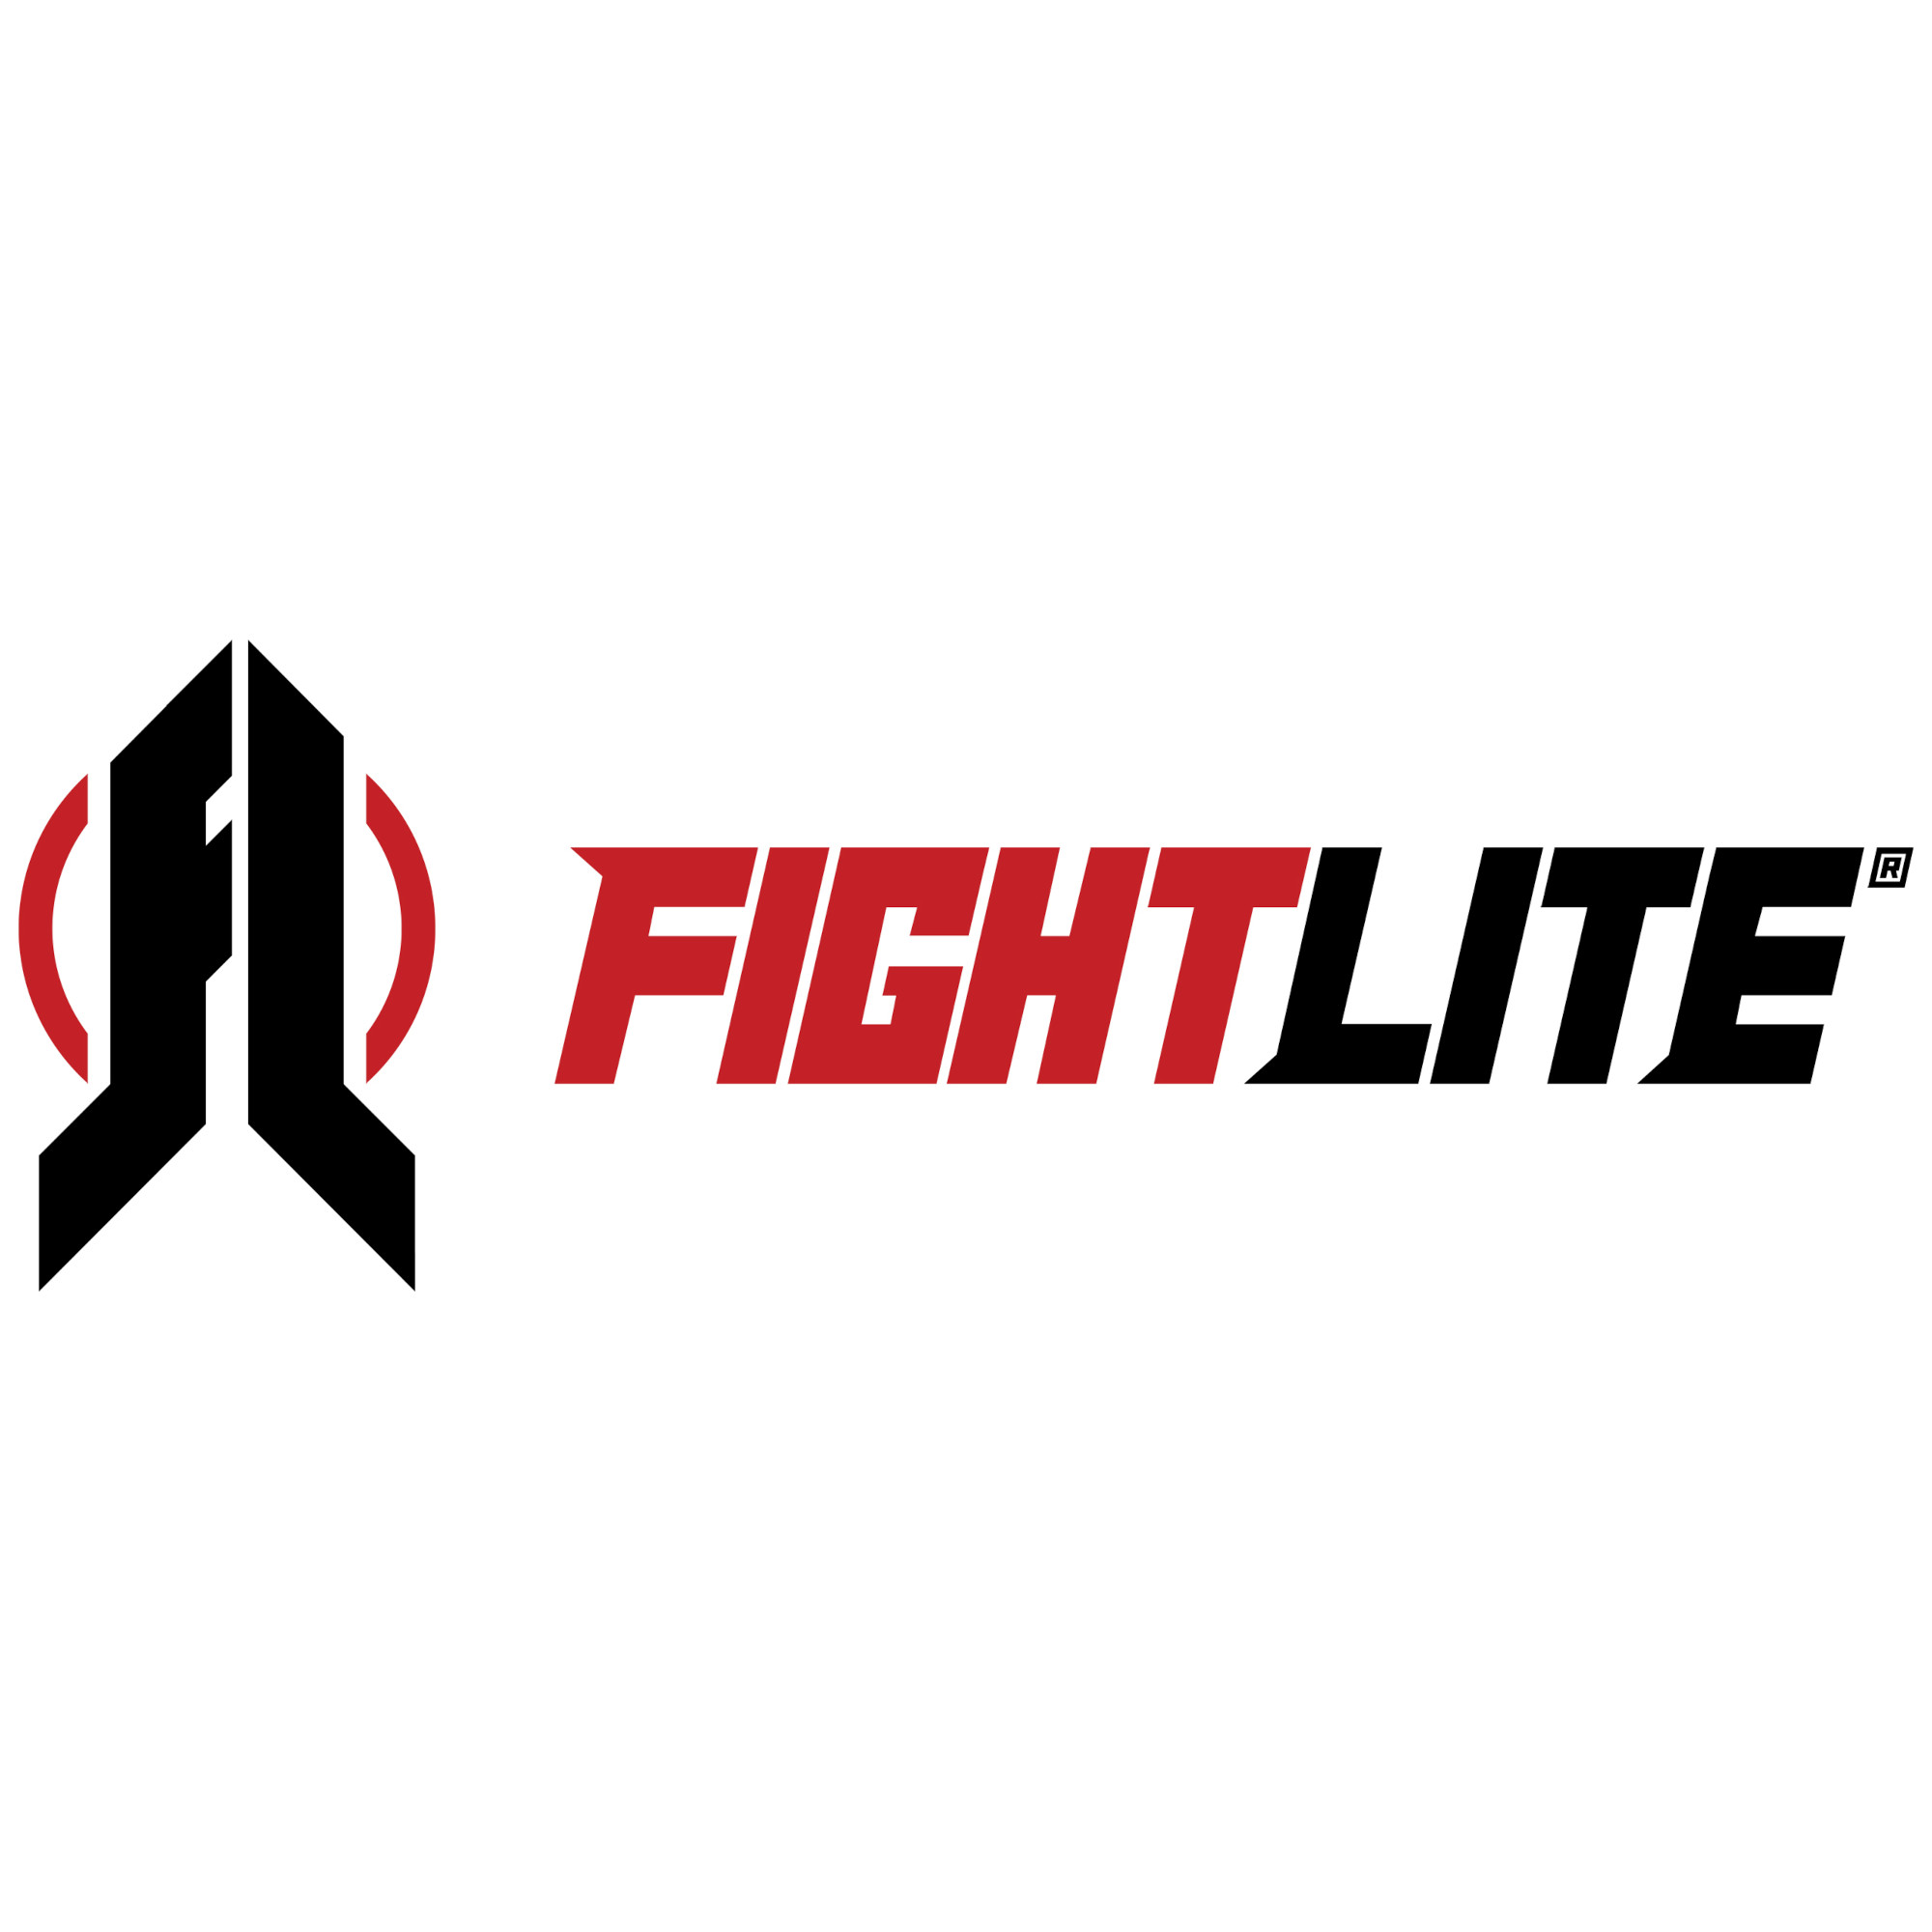 FightLite